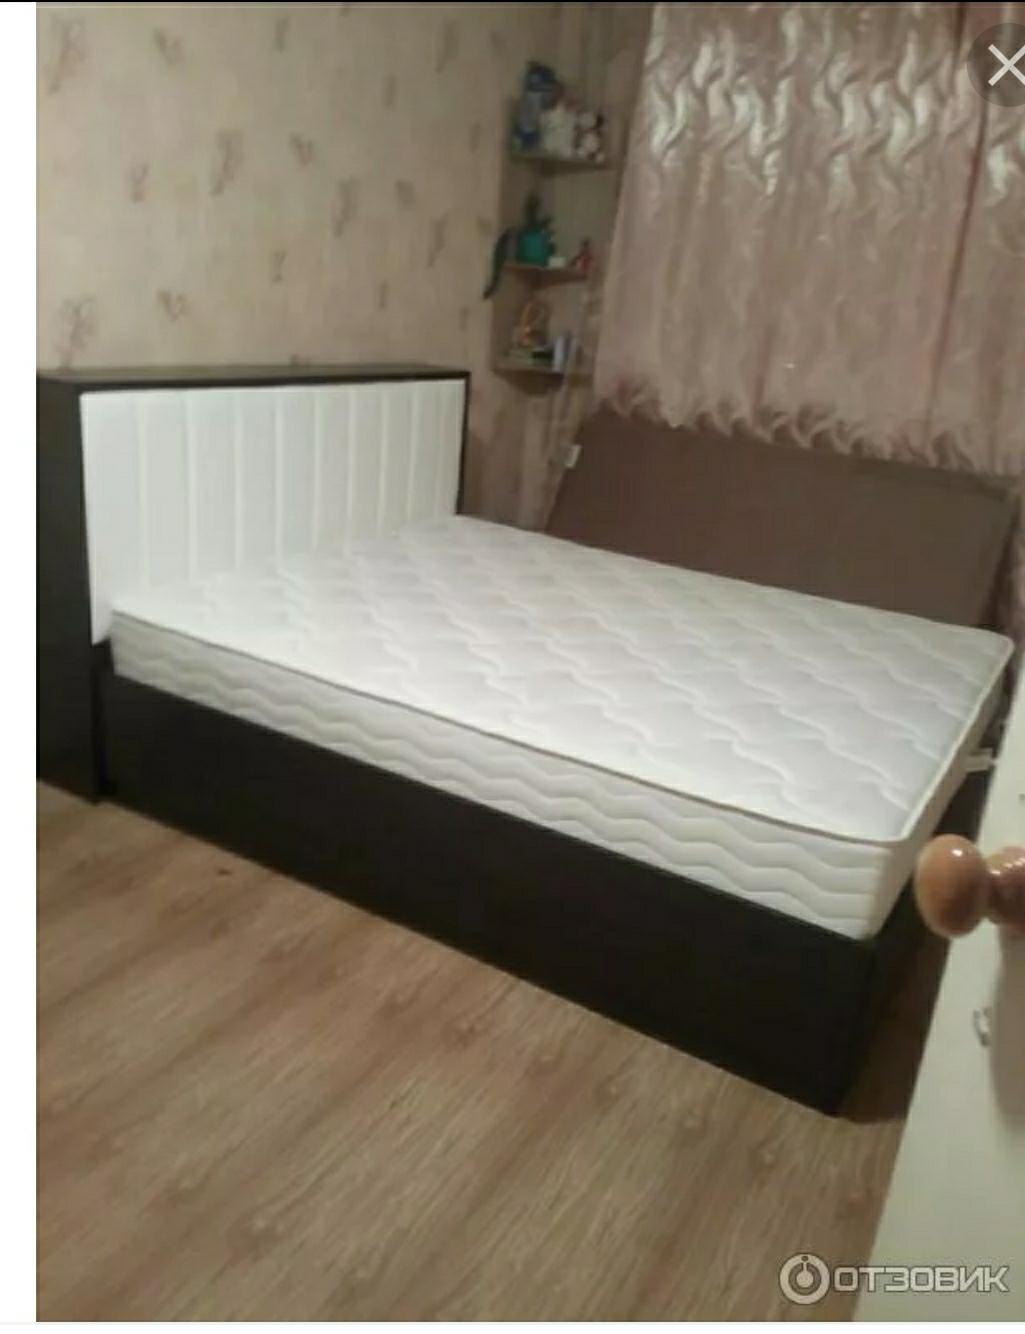 Кровать оптима люкс много мебели